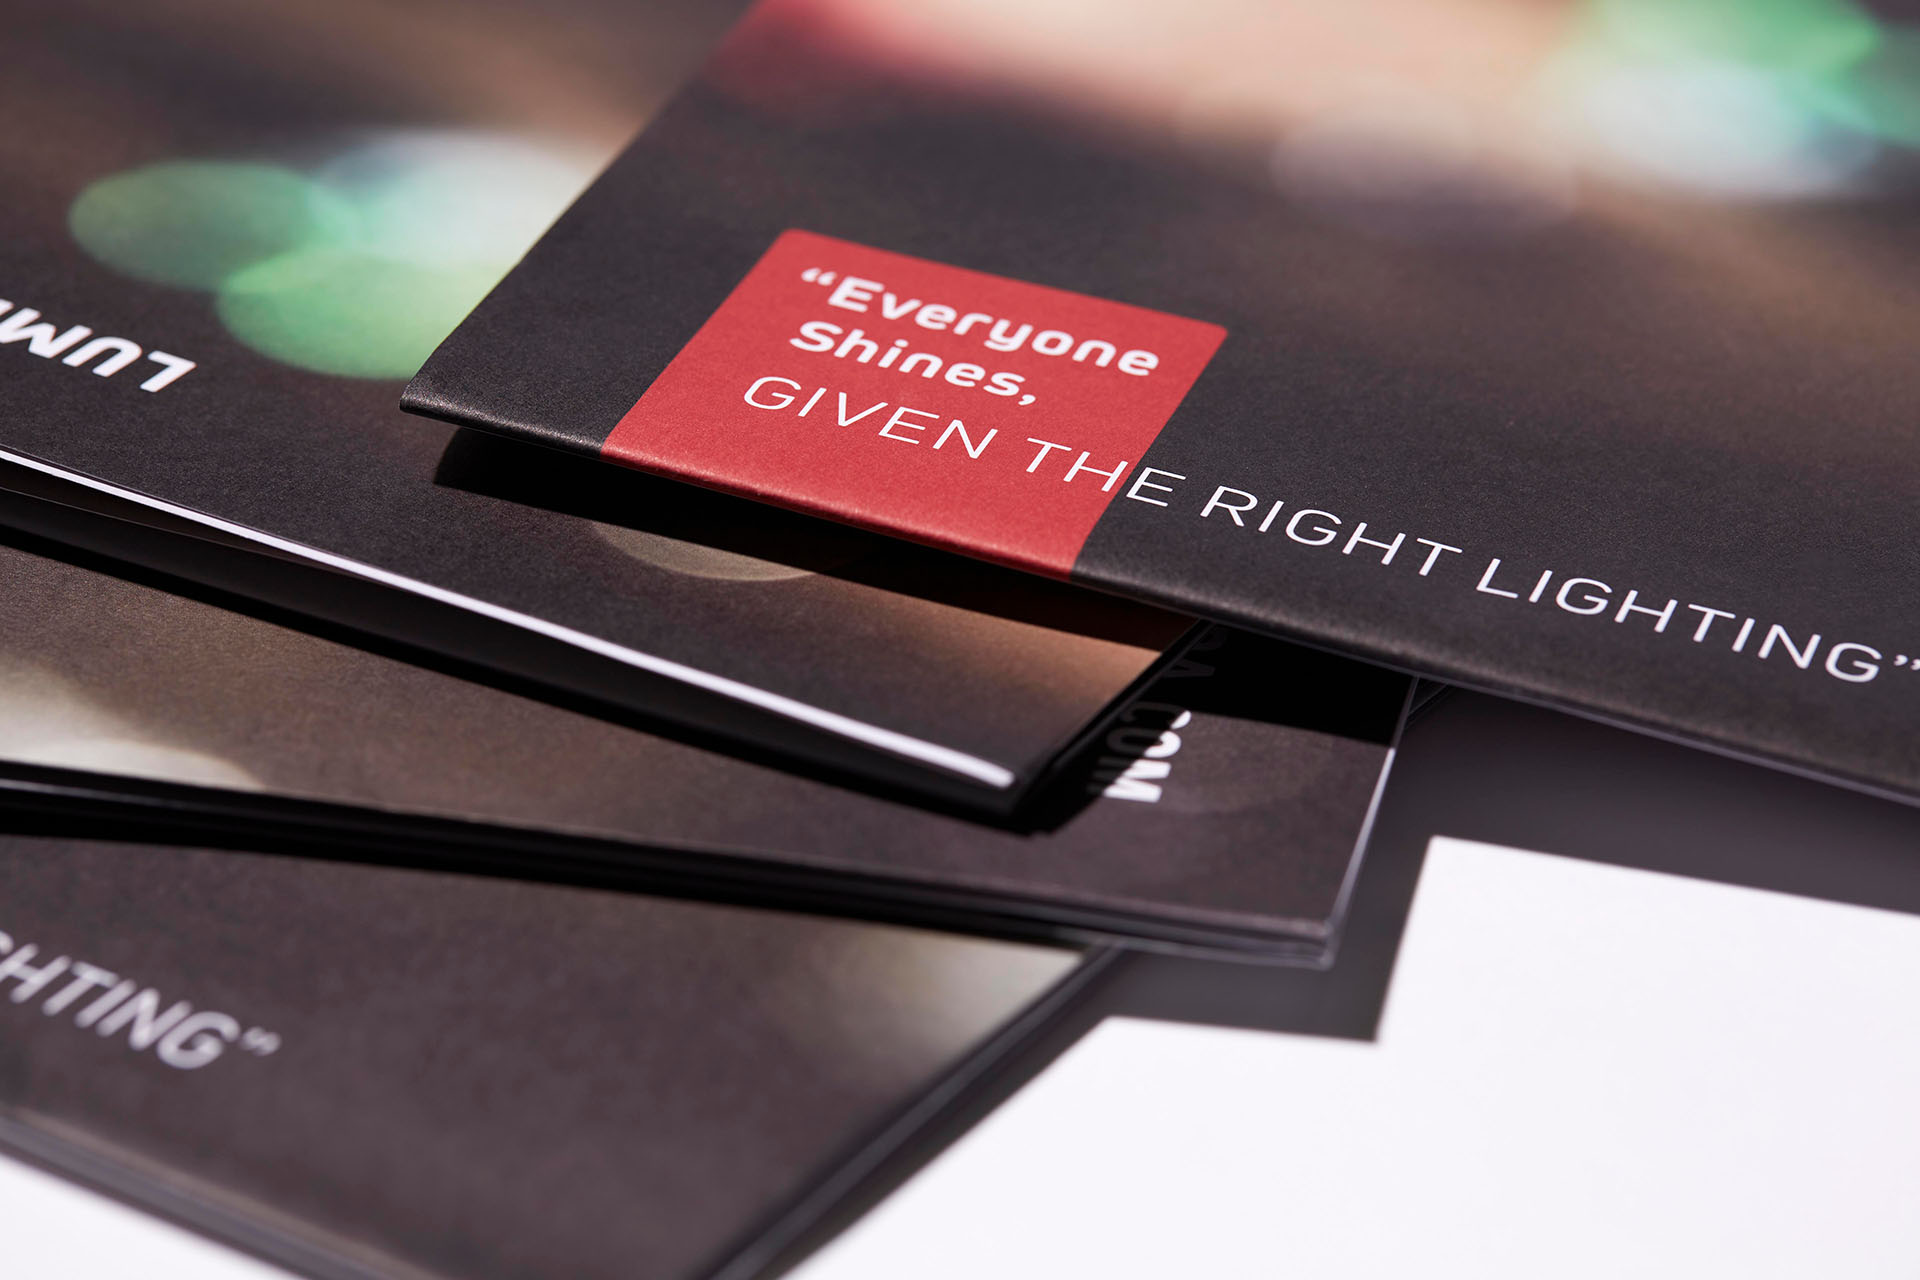 LUMIVIDA LED Desk Lamp Brochure Copywriting